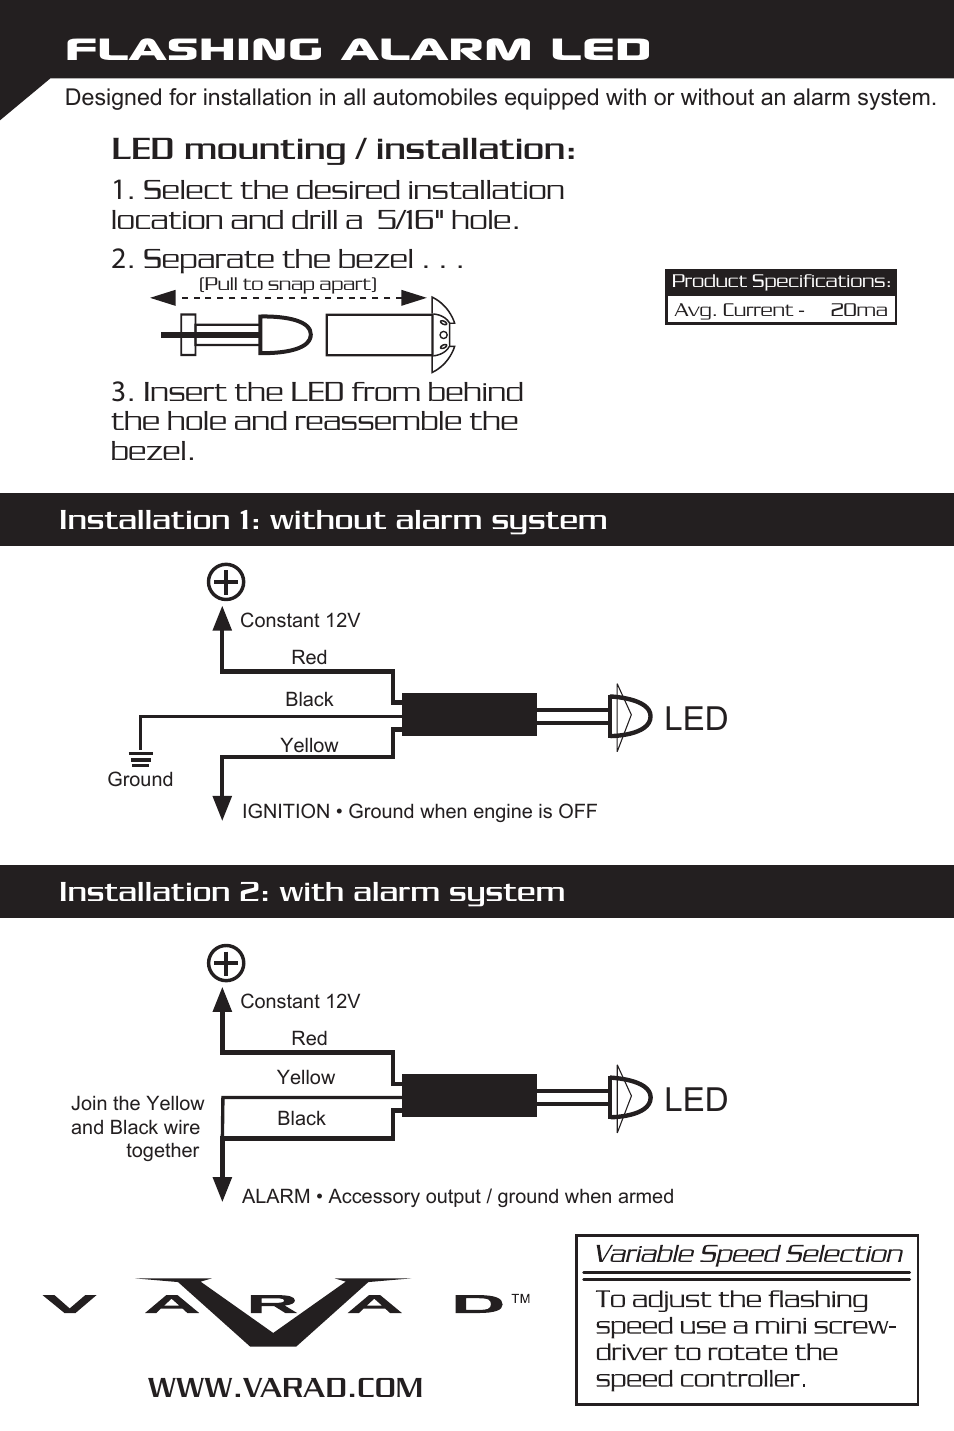 LL - Flashing Alarm LED